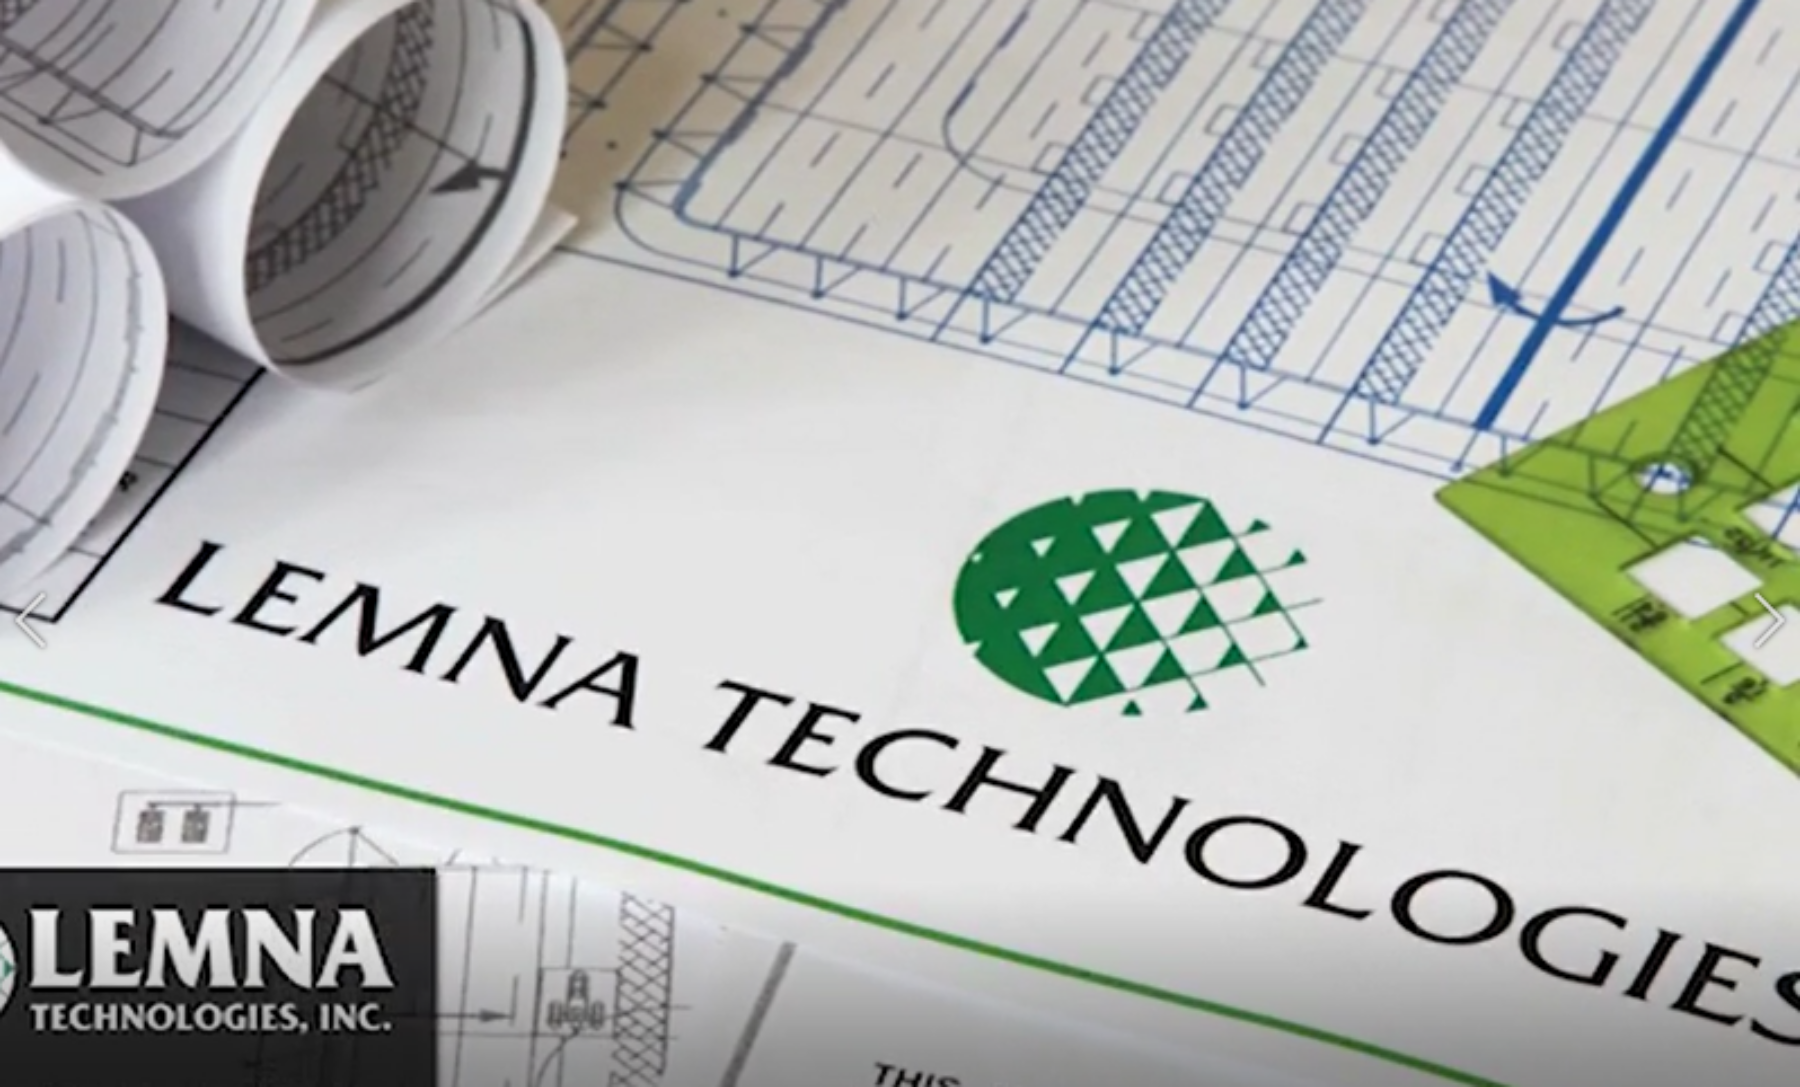 Lemna technologies logo on paper